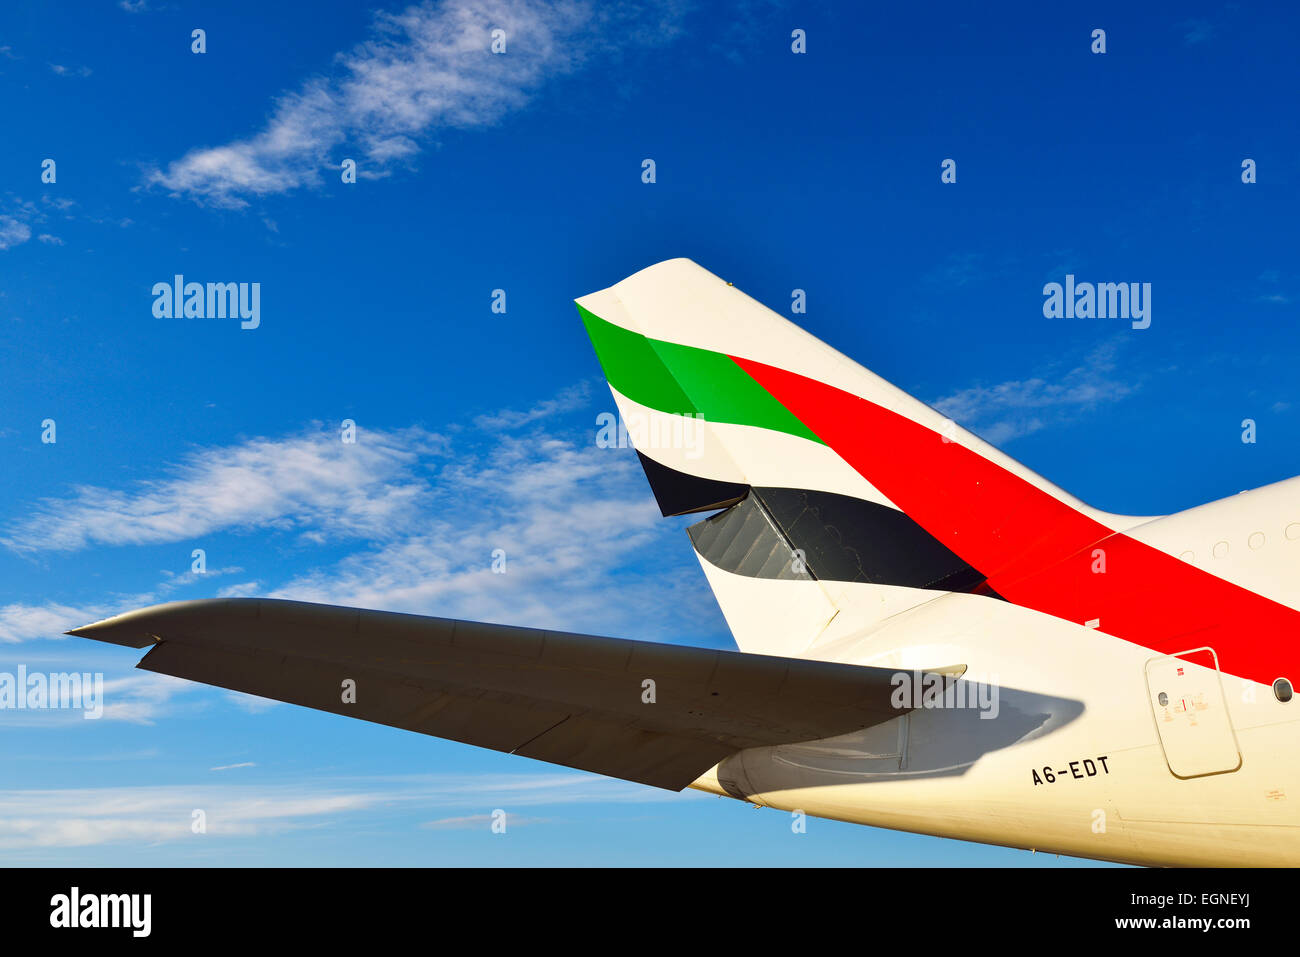 Emirates Airlines, vías aéreas, Airbus a 380, avión, avión, avión, ala winglet, estabilizador horizontal, Foto de stock